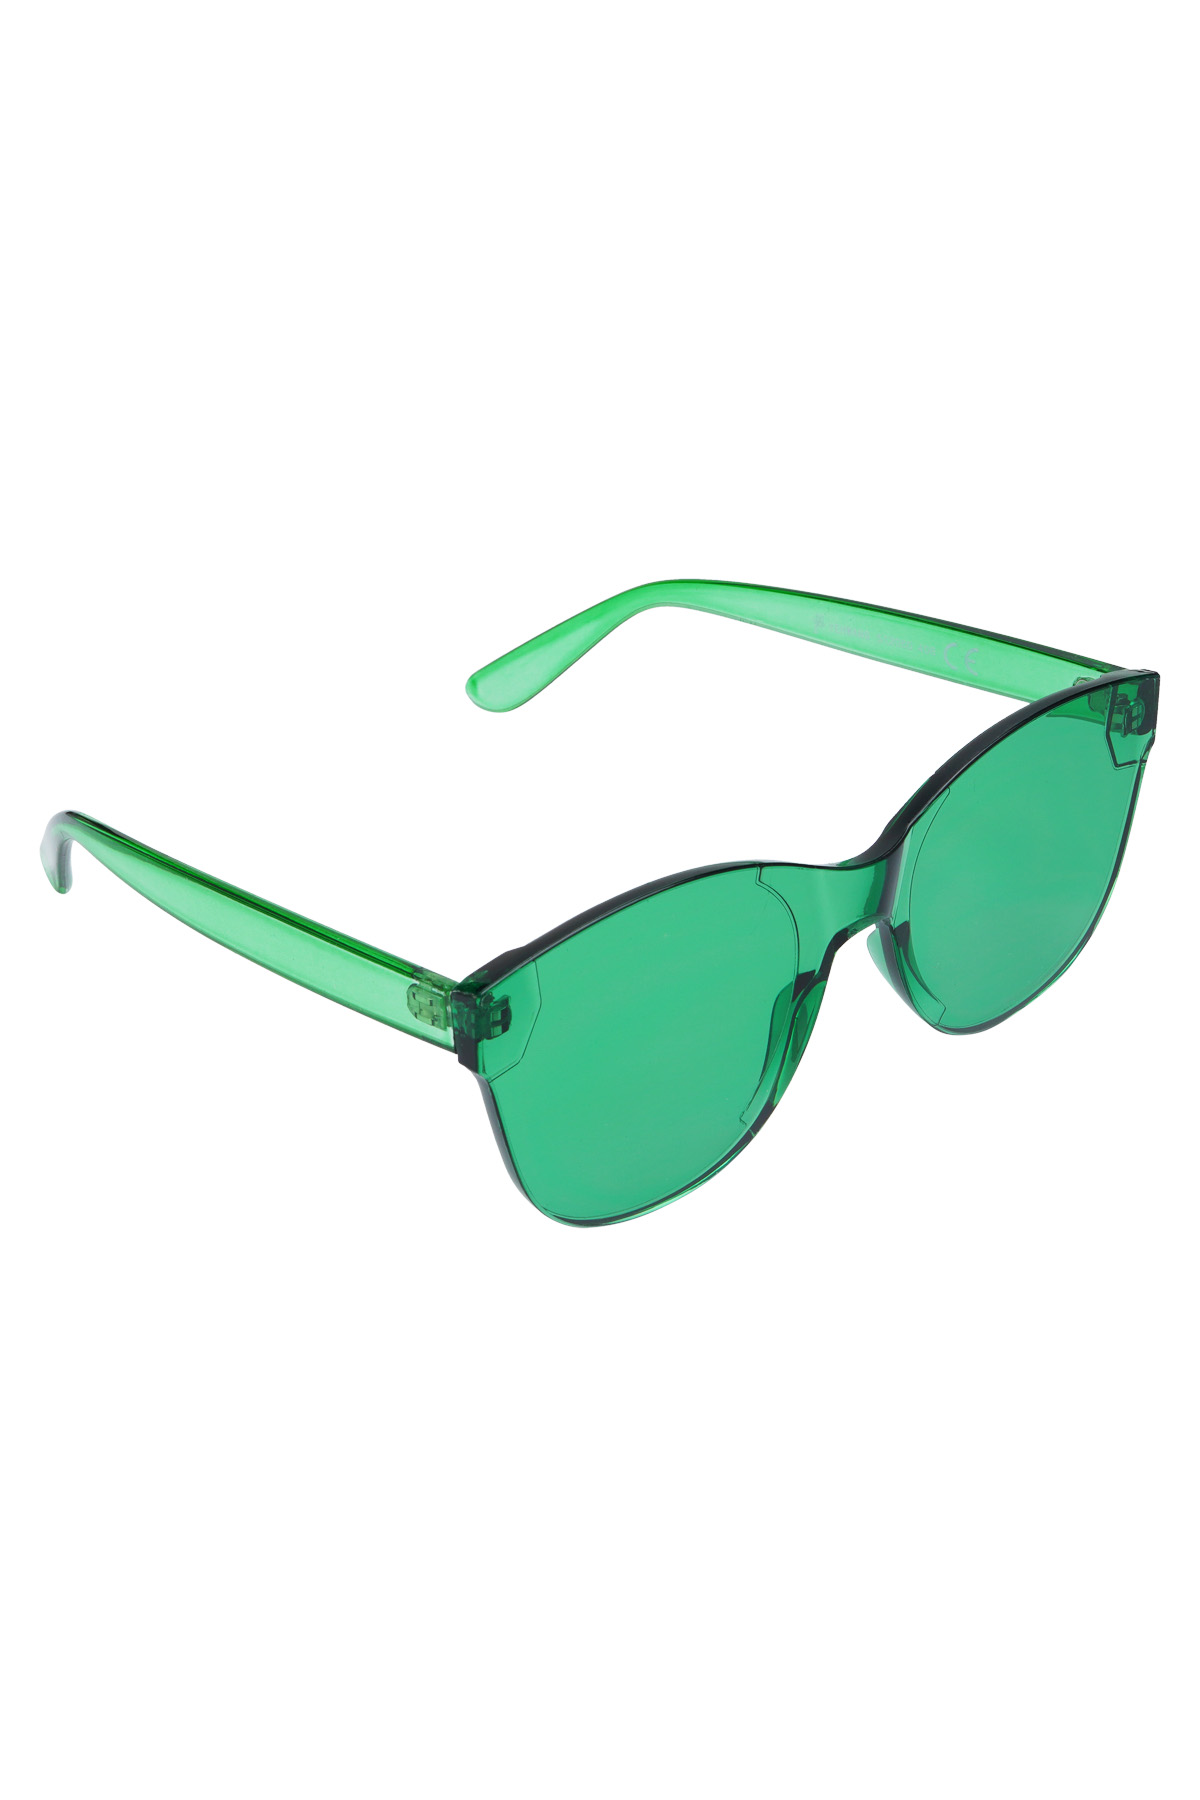 Single-color trendy sunglasses - green